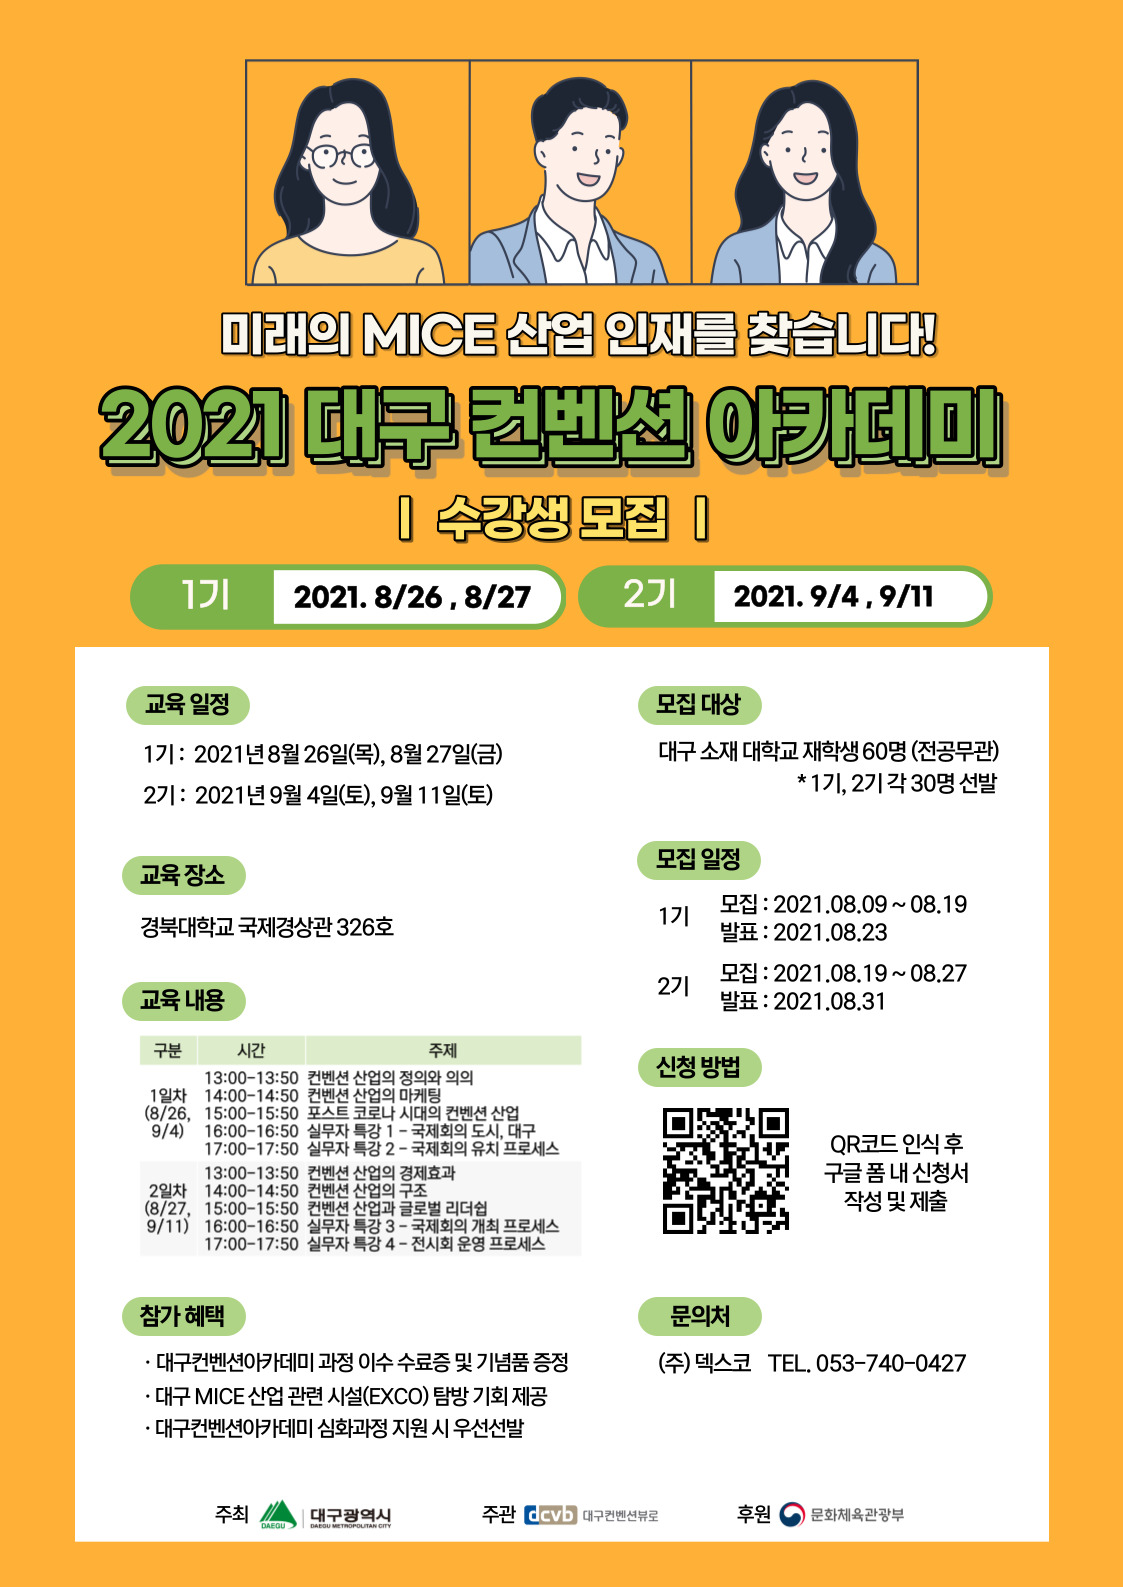 2021 대구 컨벤션 아카데미 수강생 모집